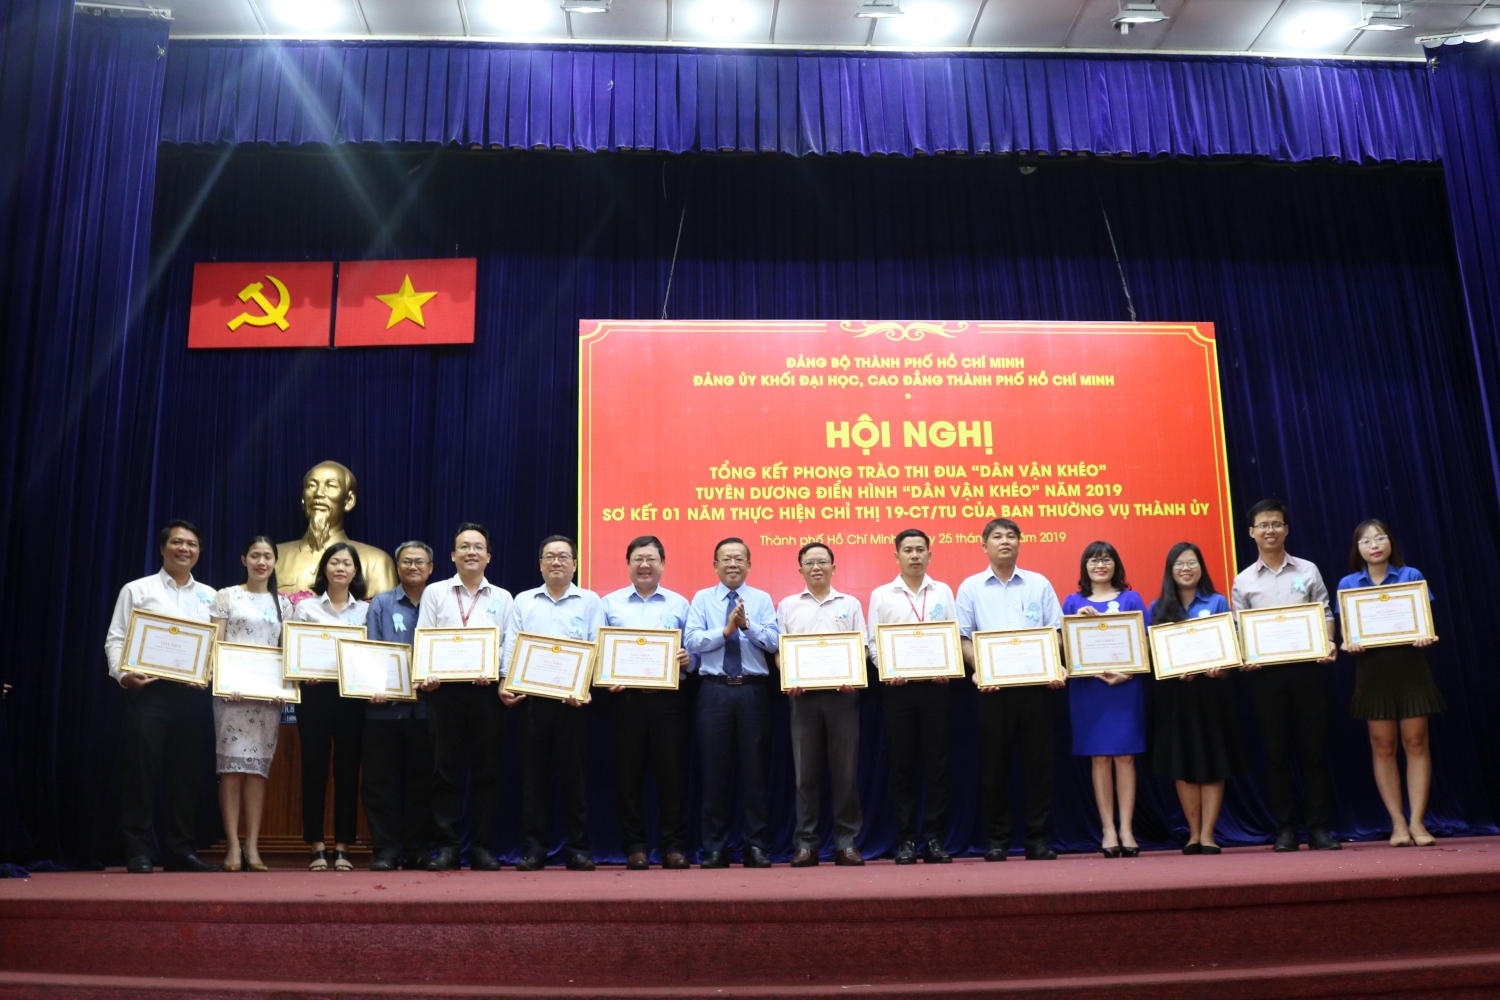 Đồng chí Nguyễn Hữu Hiệp - Ủy viên Ban Thường vụ, Trưởng Ban Dân vận Thành ủy trao giấy khen biểu dương các tập thể điển hình Dân vận khéo năm 2019